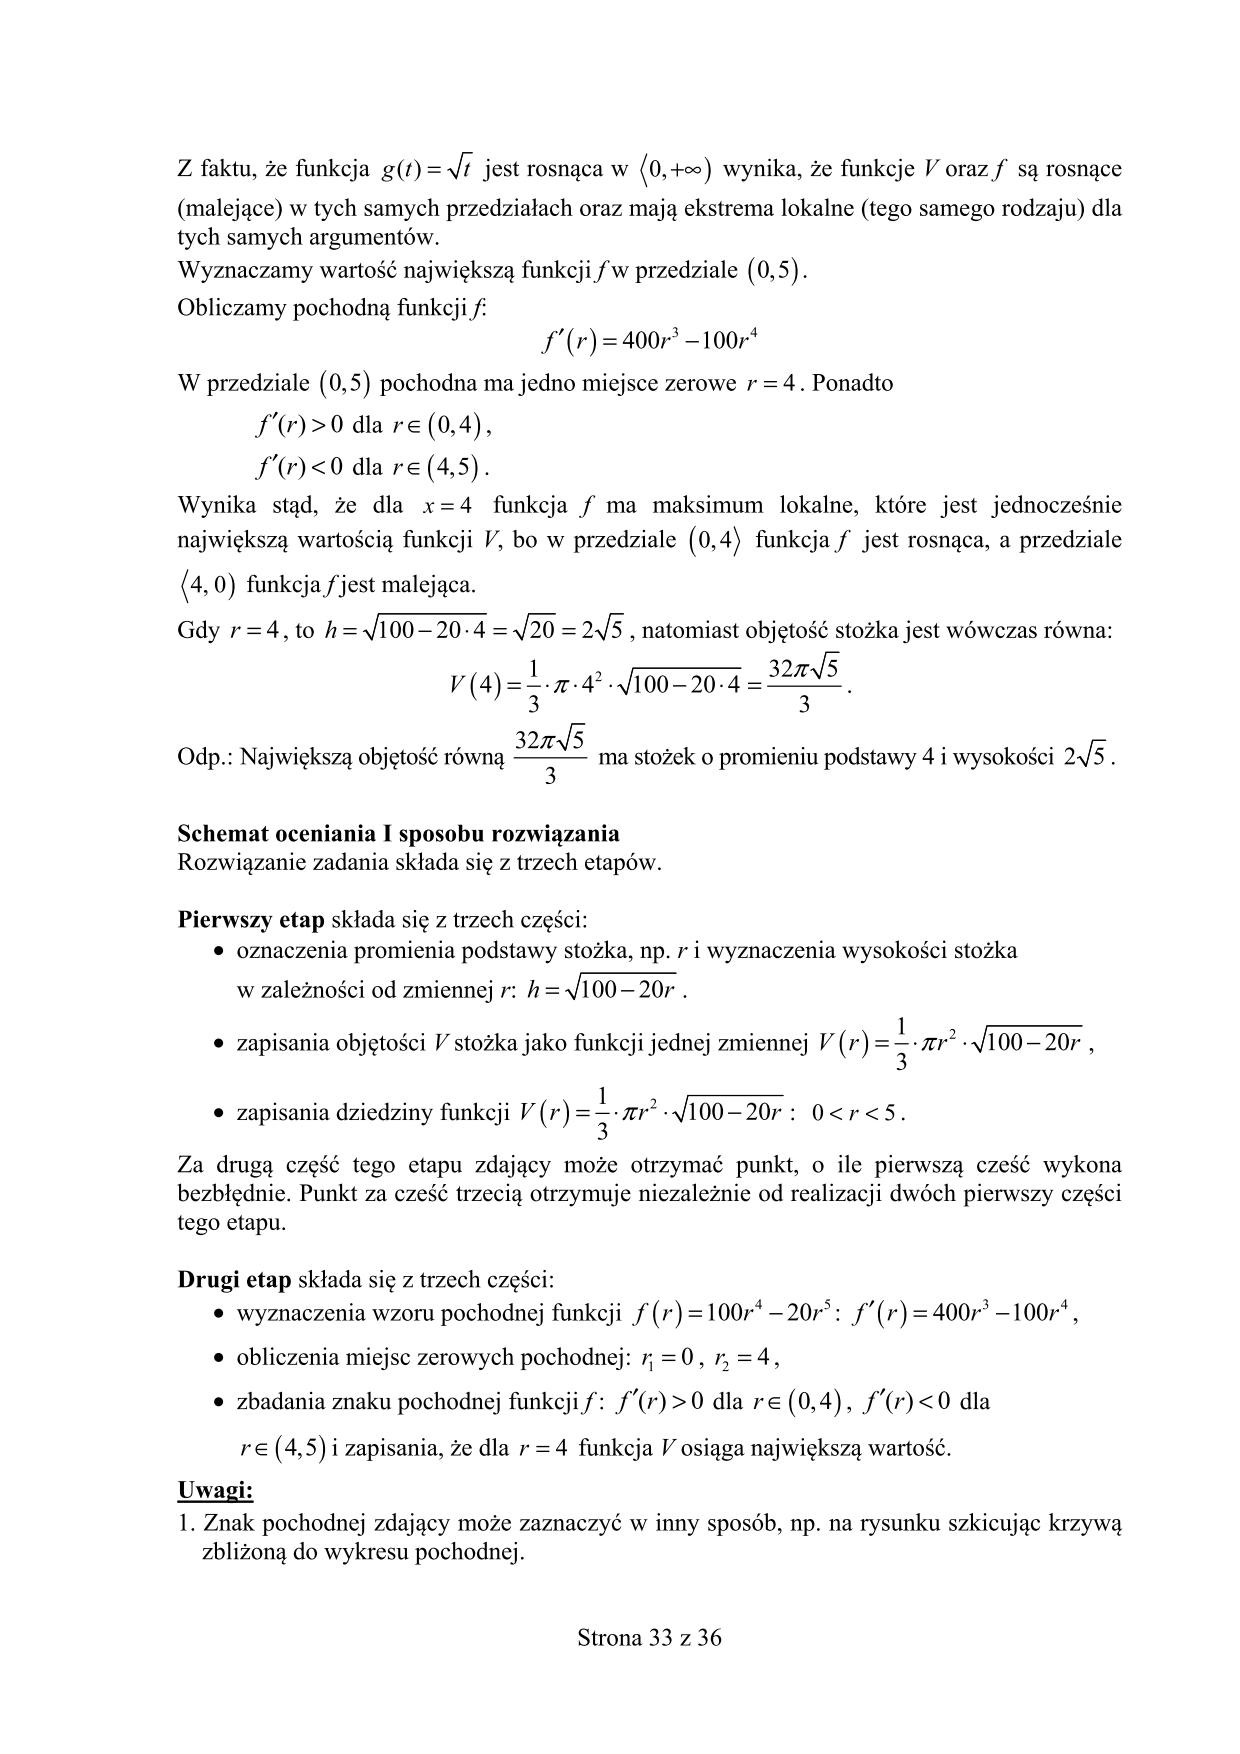 odpowiedzi-matematyka-poziom-rozszerzony-matura-2015-33